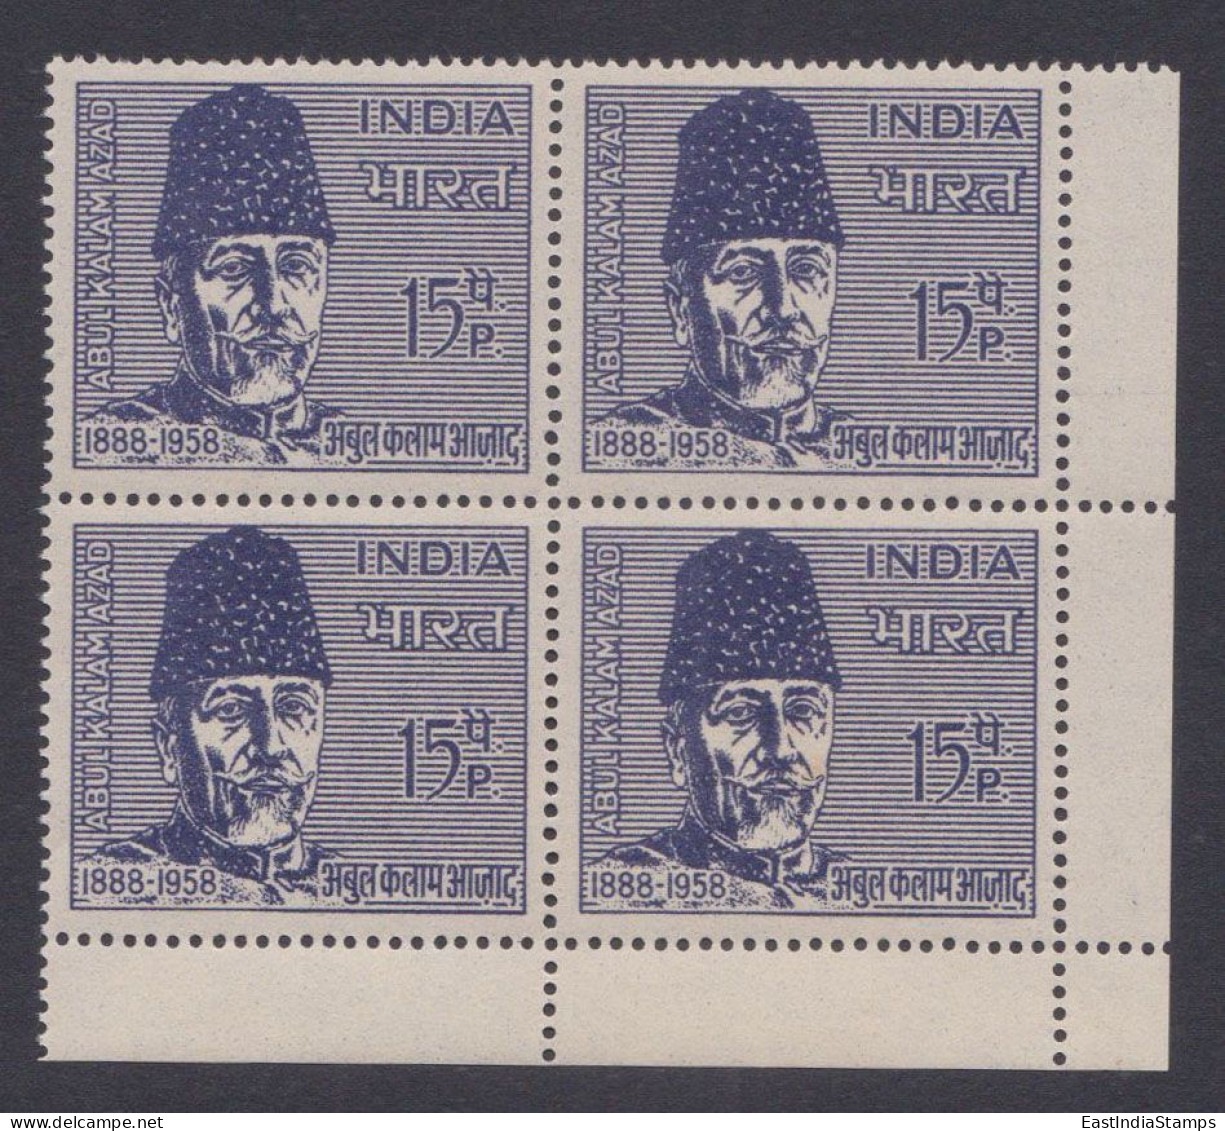 Inde India 1966 MNH Maulana Abul Kalam Azad, Indian Independence Leader, Muslim Politician, Writer, Congress, Block - Ongebruikt